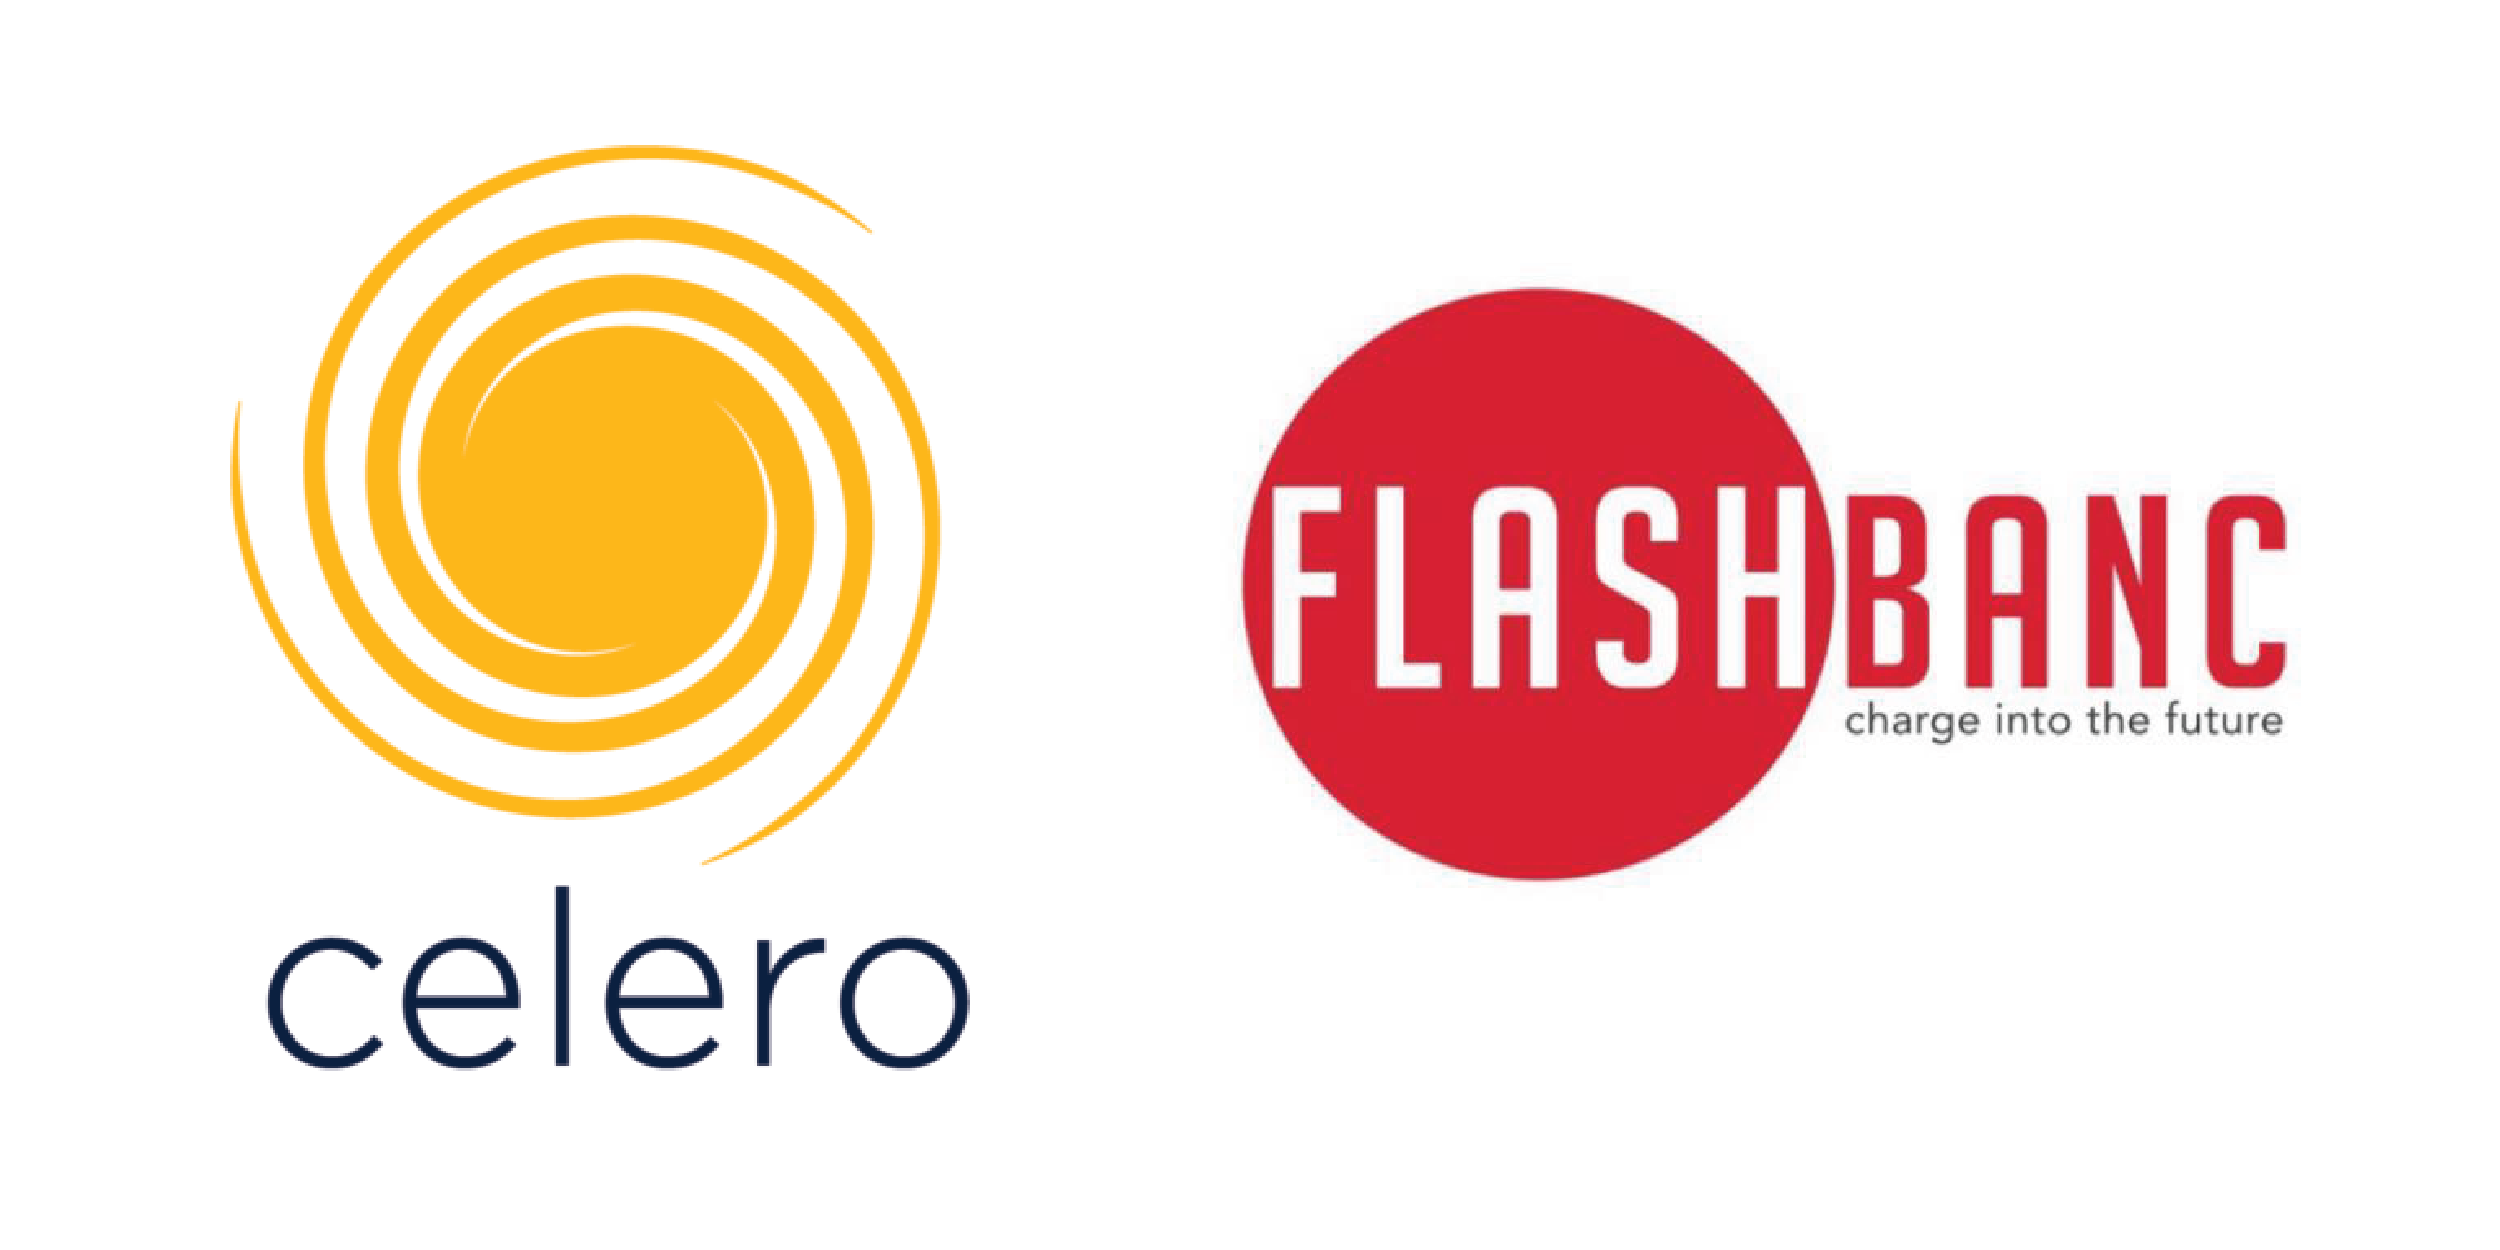 Celero and Flashbanc logo